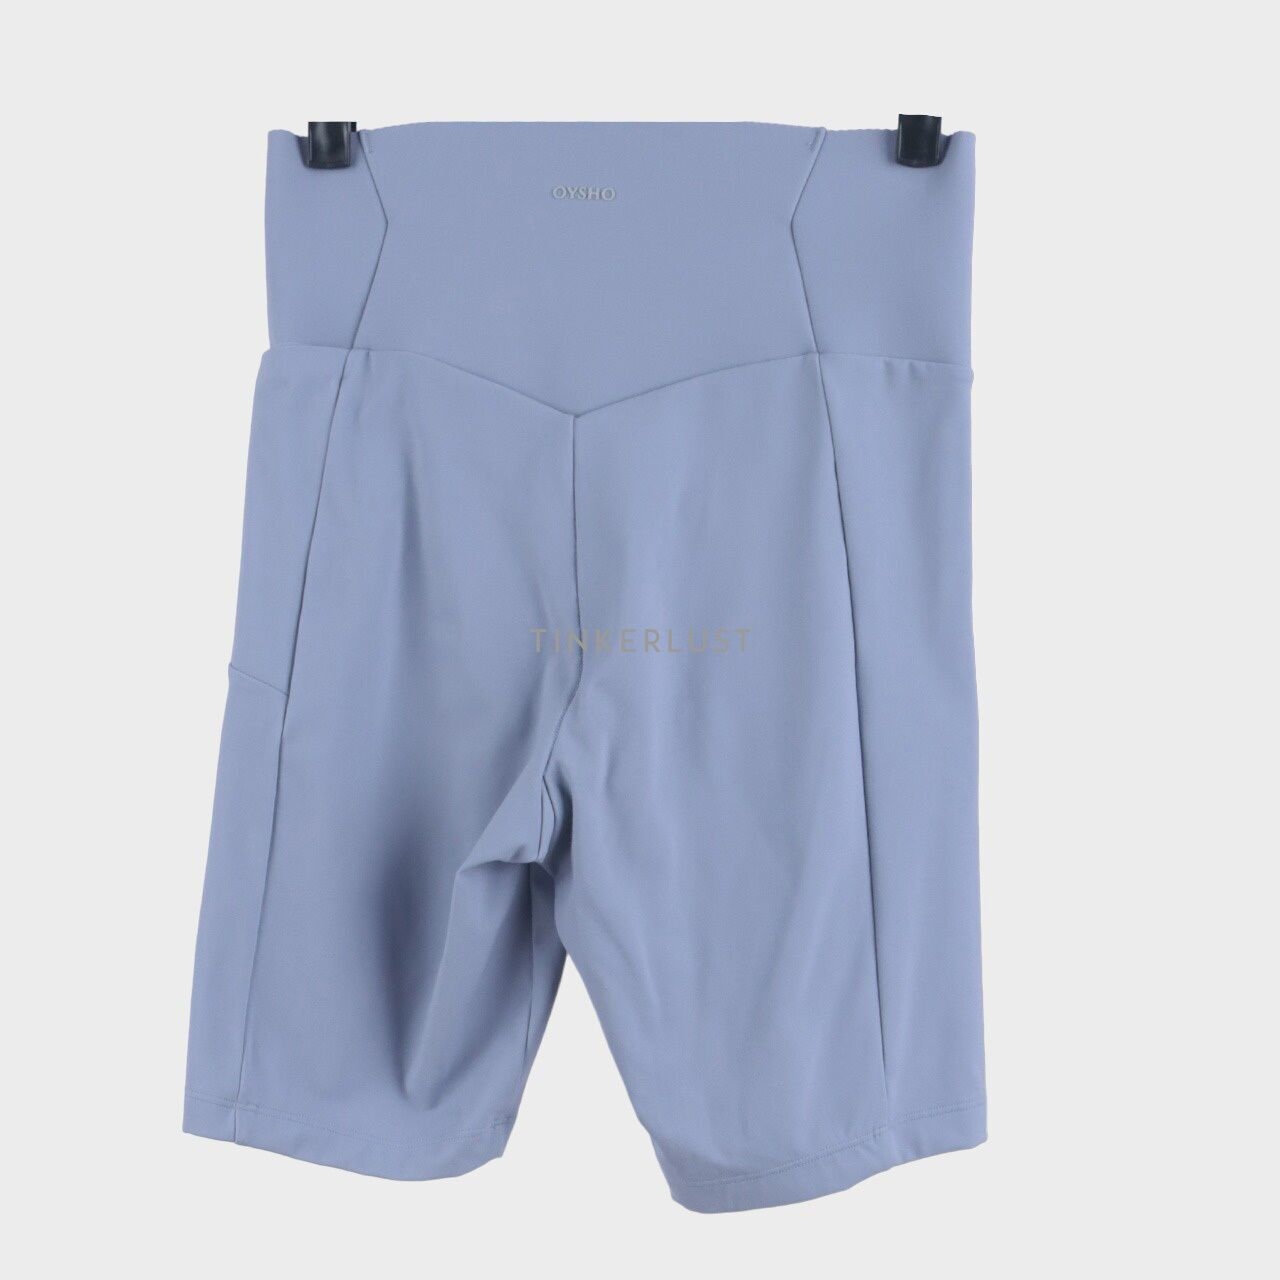 Oysho Blue Shorts